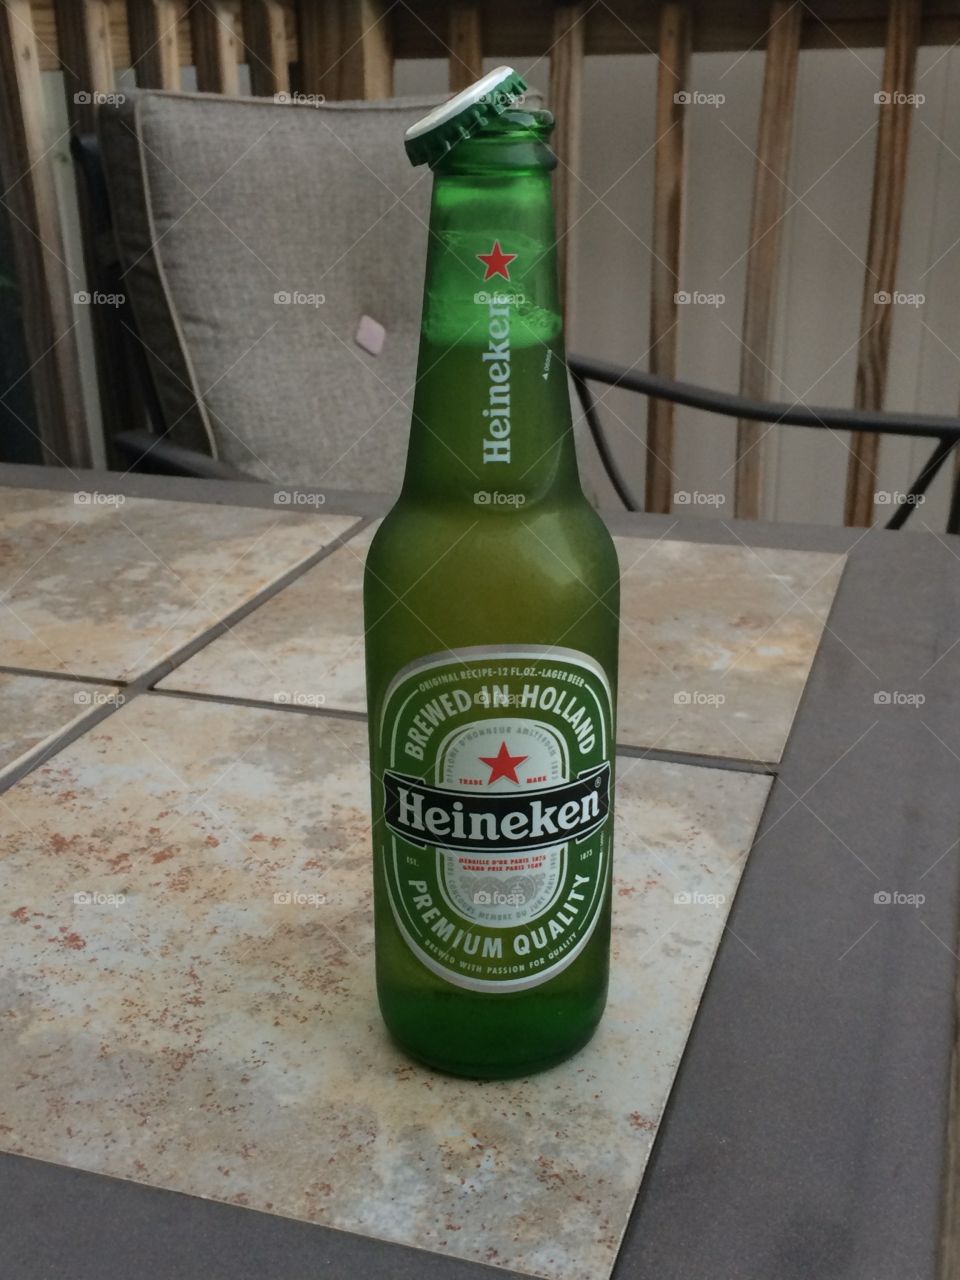 Have a cold one #Heineken